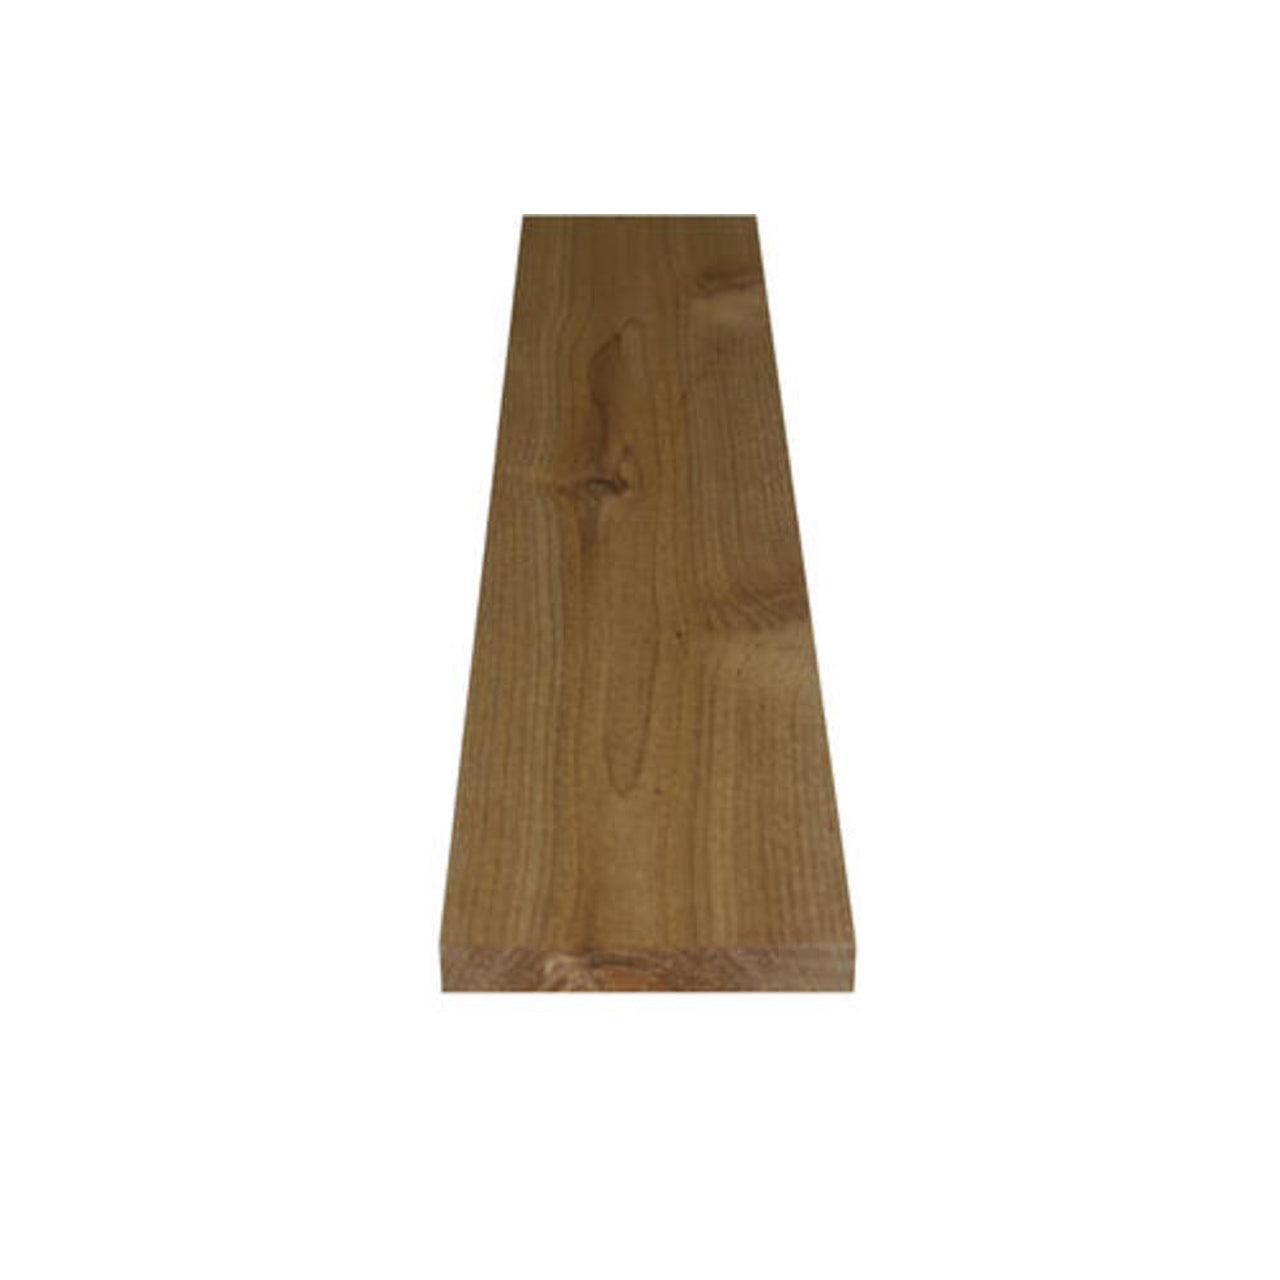 Cedar dressed four sided board